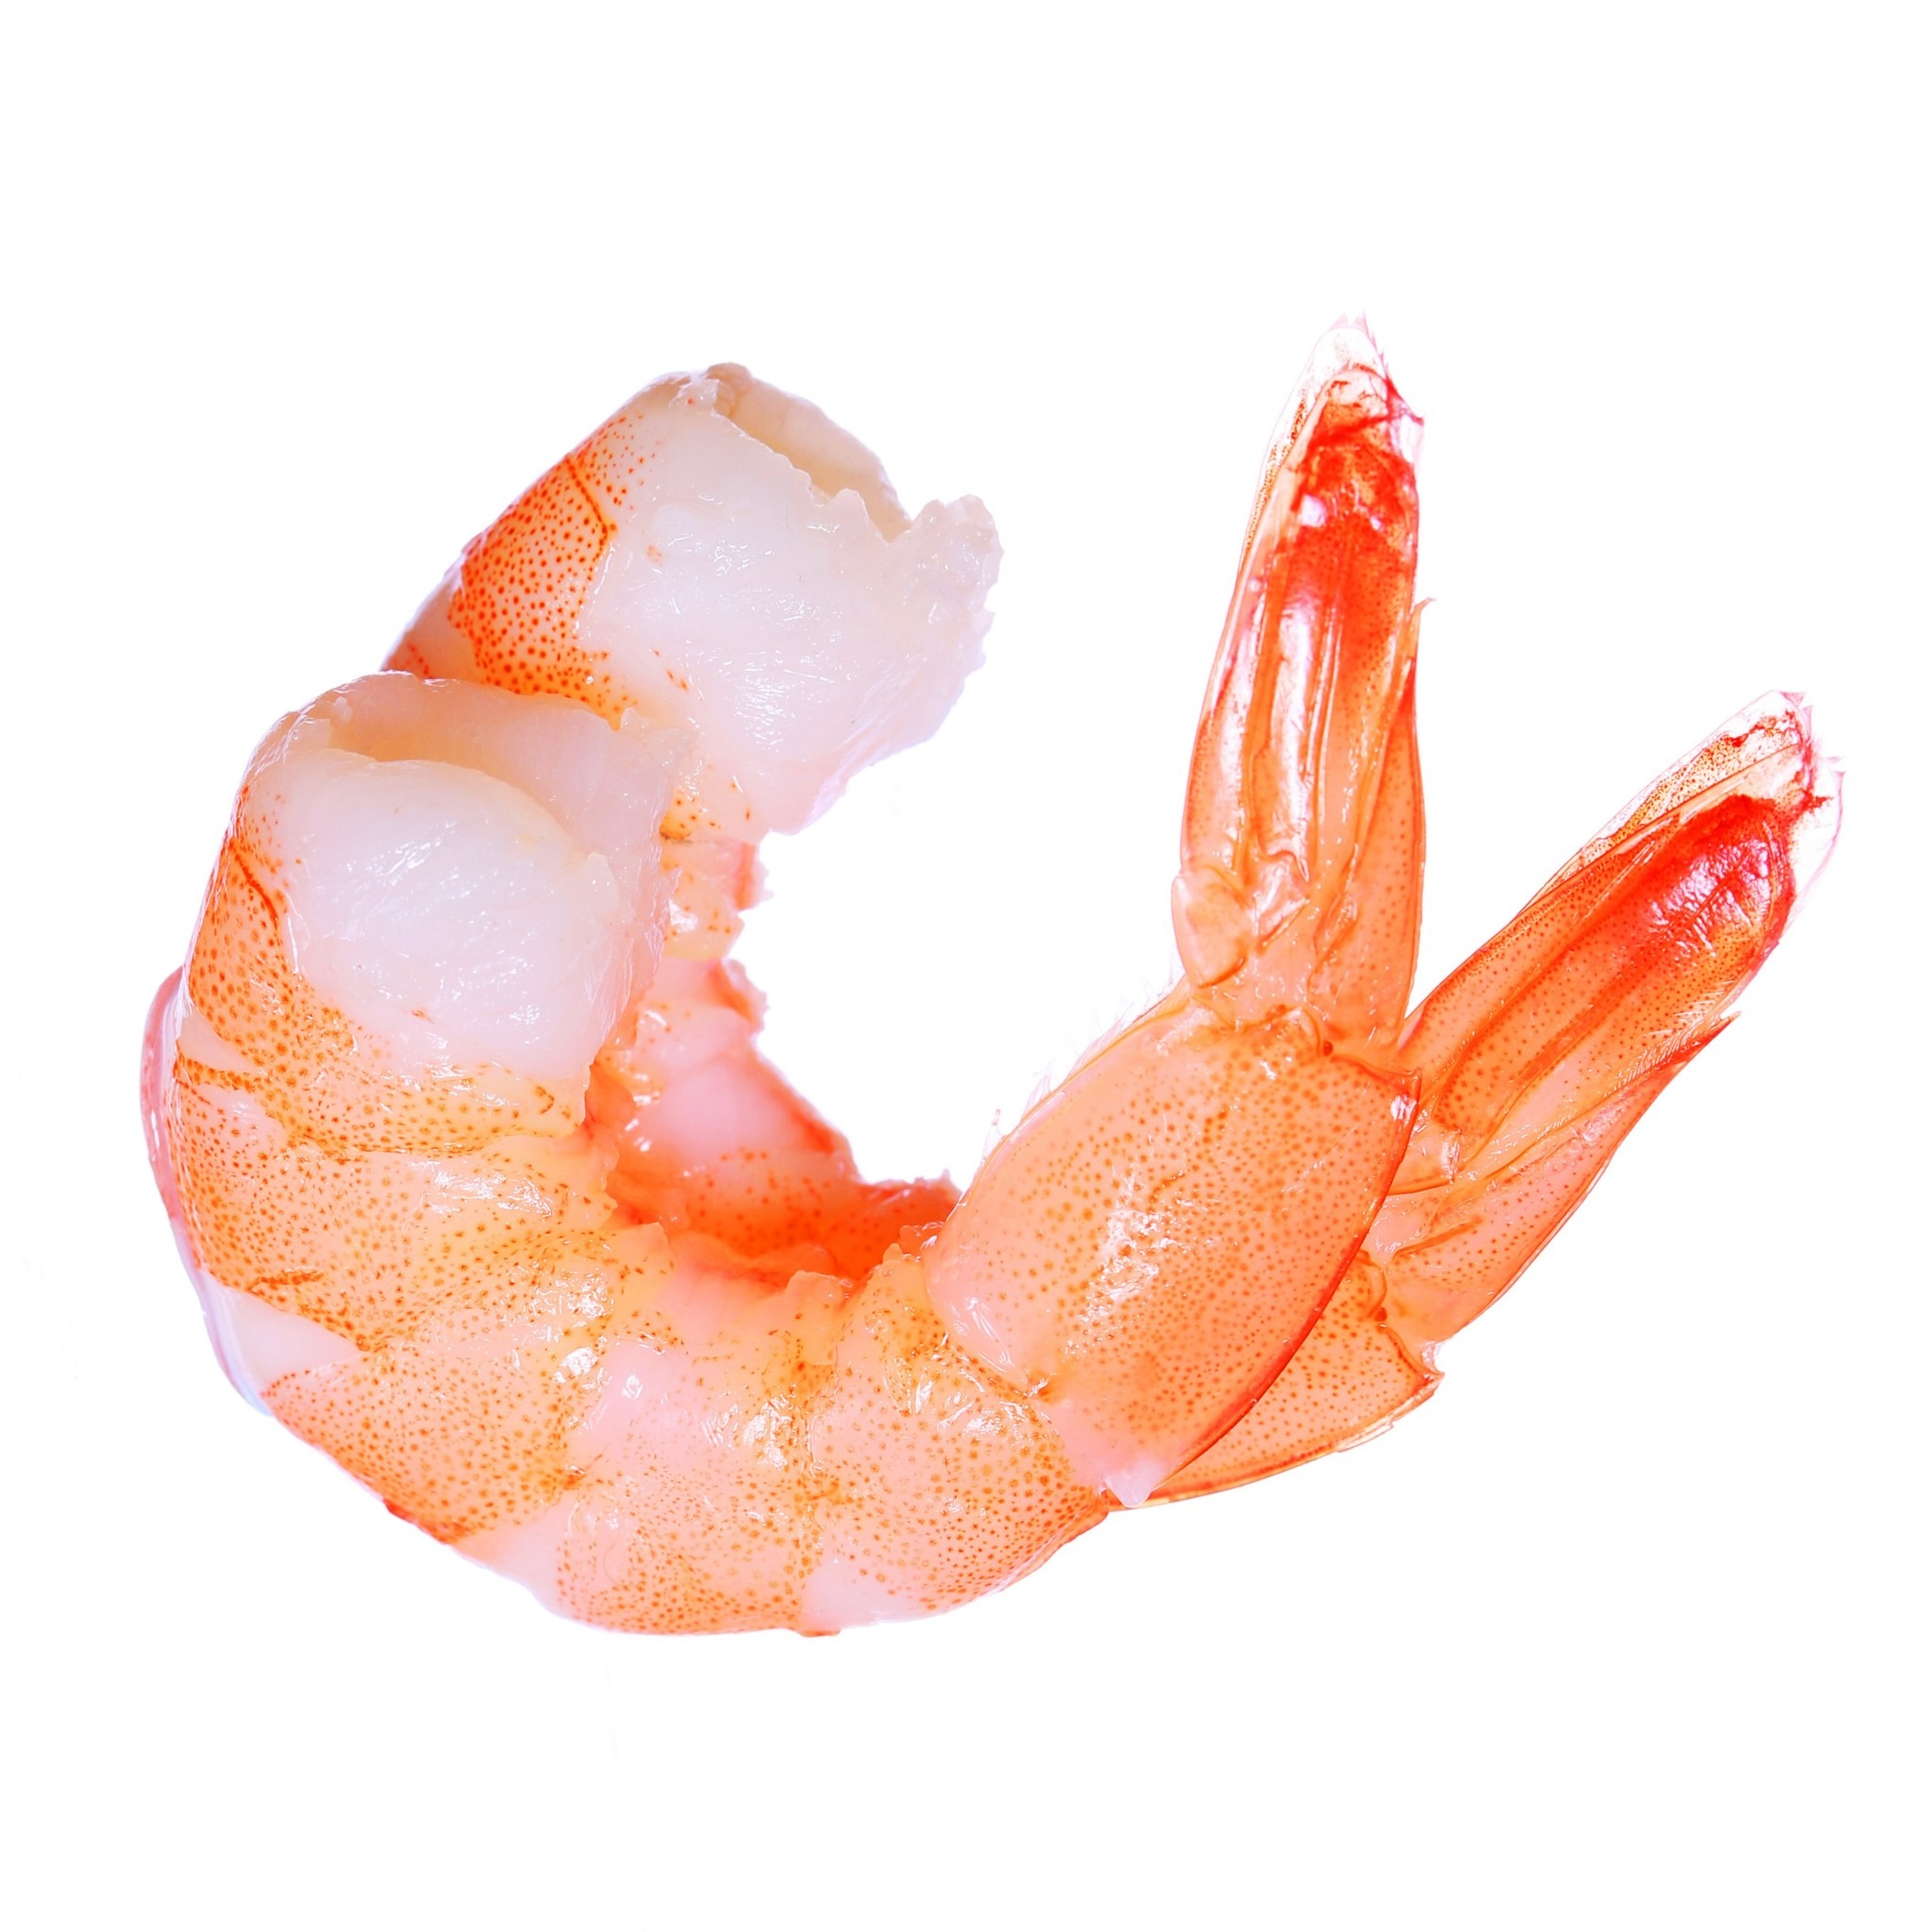 shrimp production